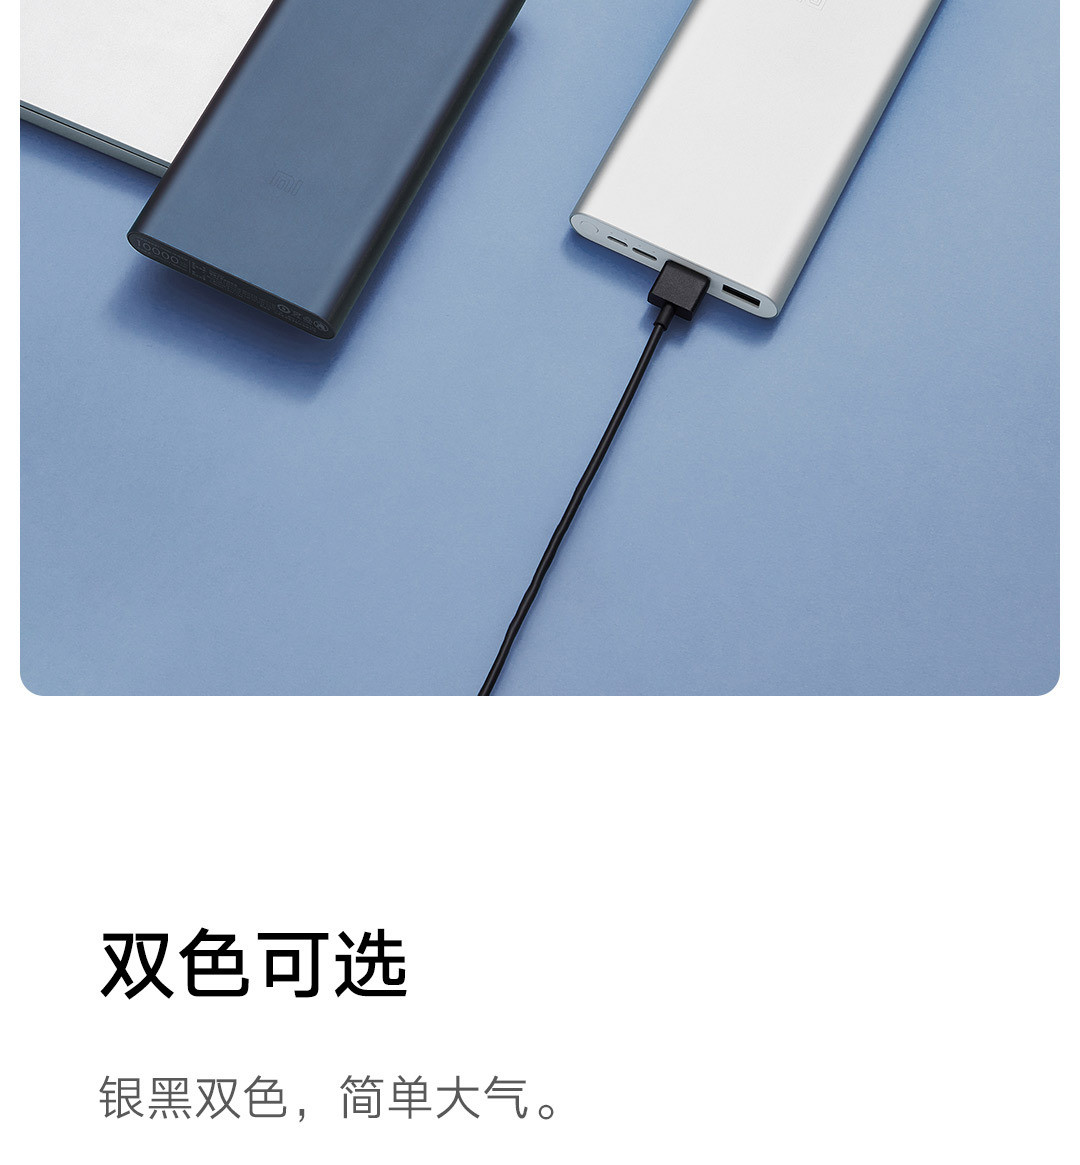 小米移动电源3 USB-C双向快充版拆解：颜值最高 大有天地-小米,移动电源,USB-C,快充,拆解 ——快科技(驱动之家旗下媒体)--科技改变未来